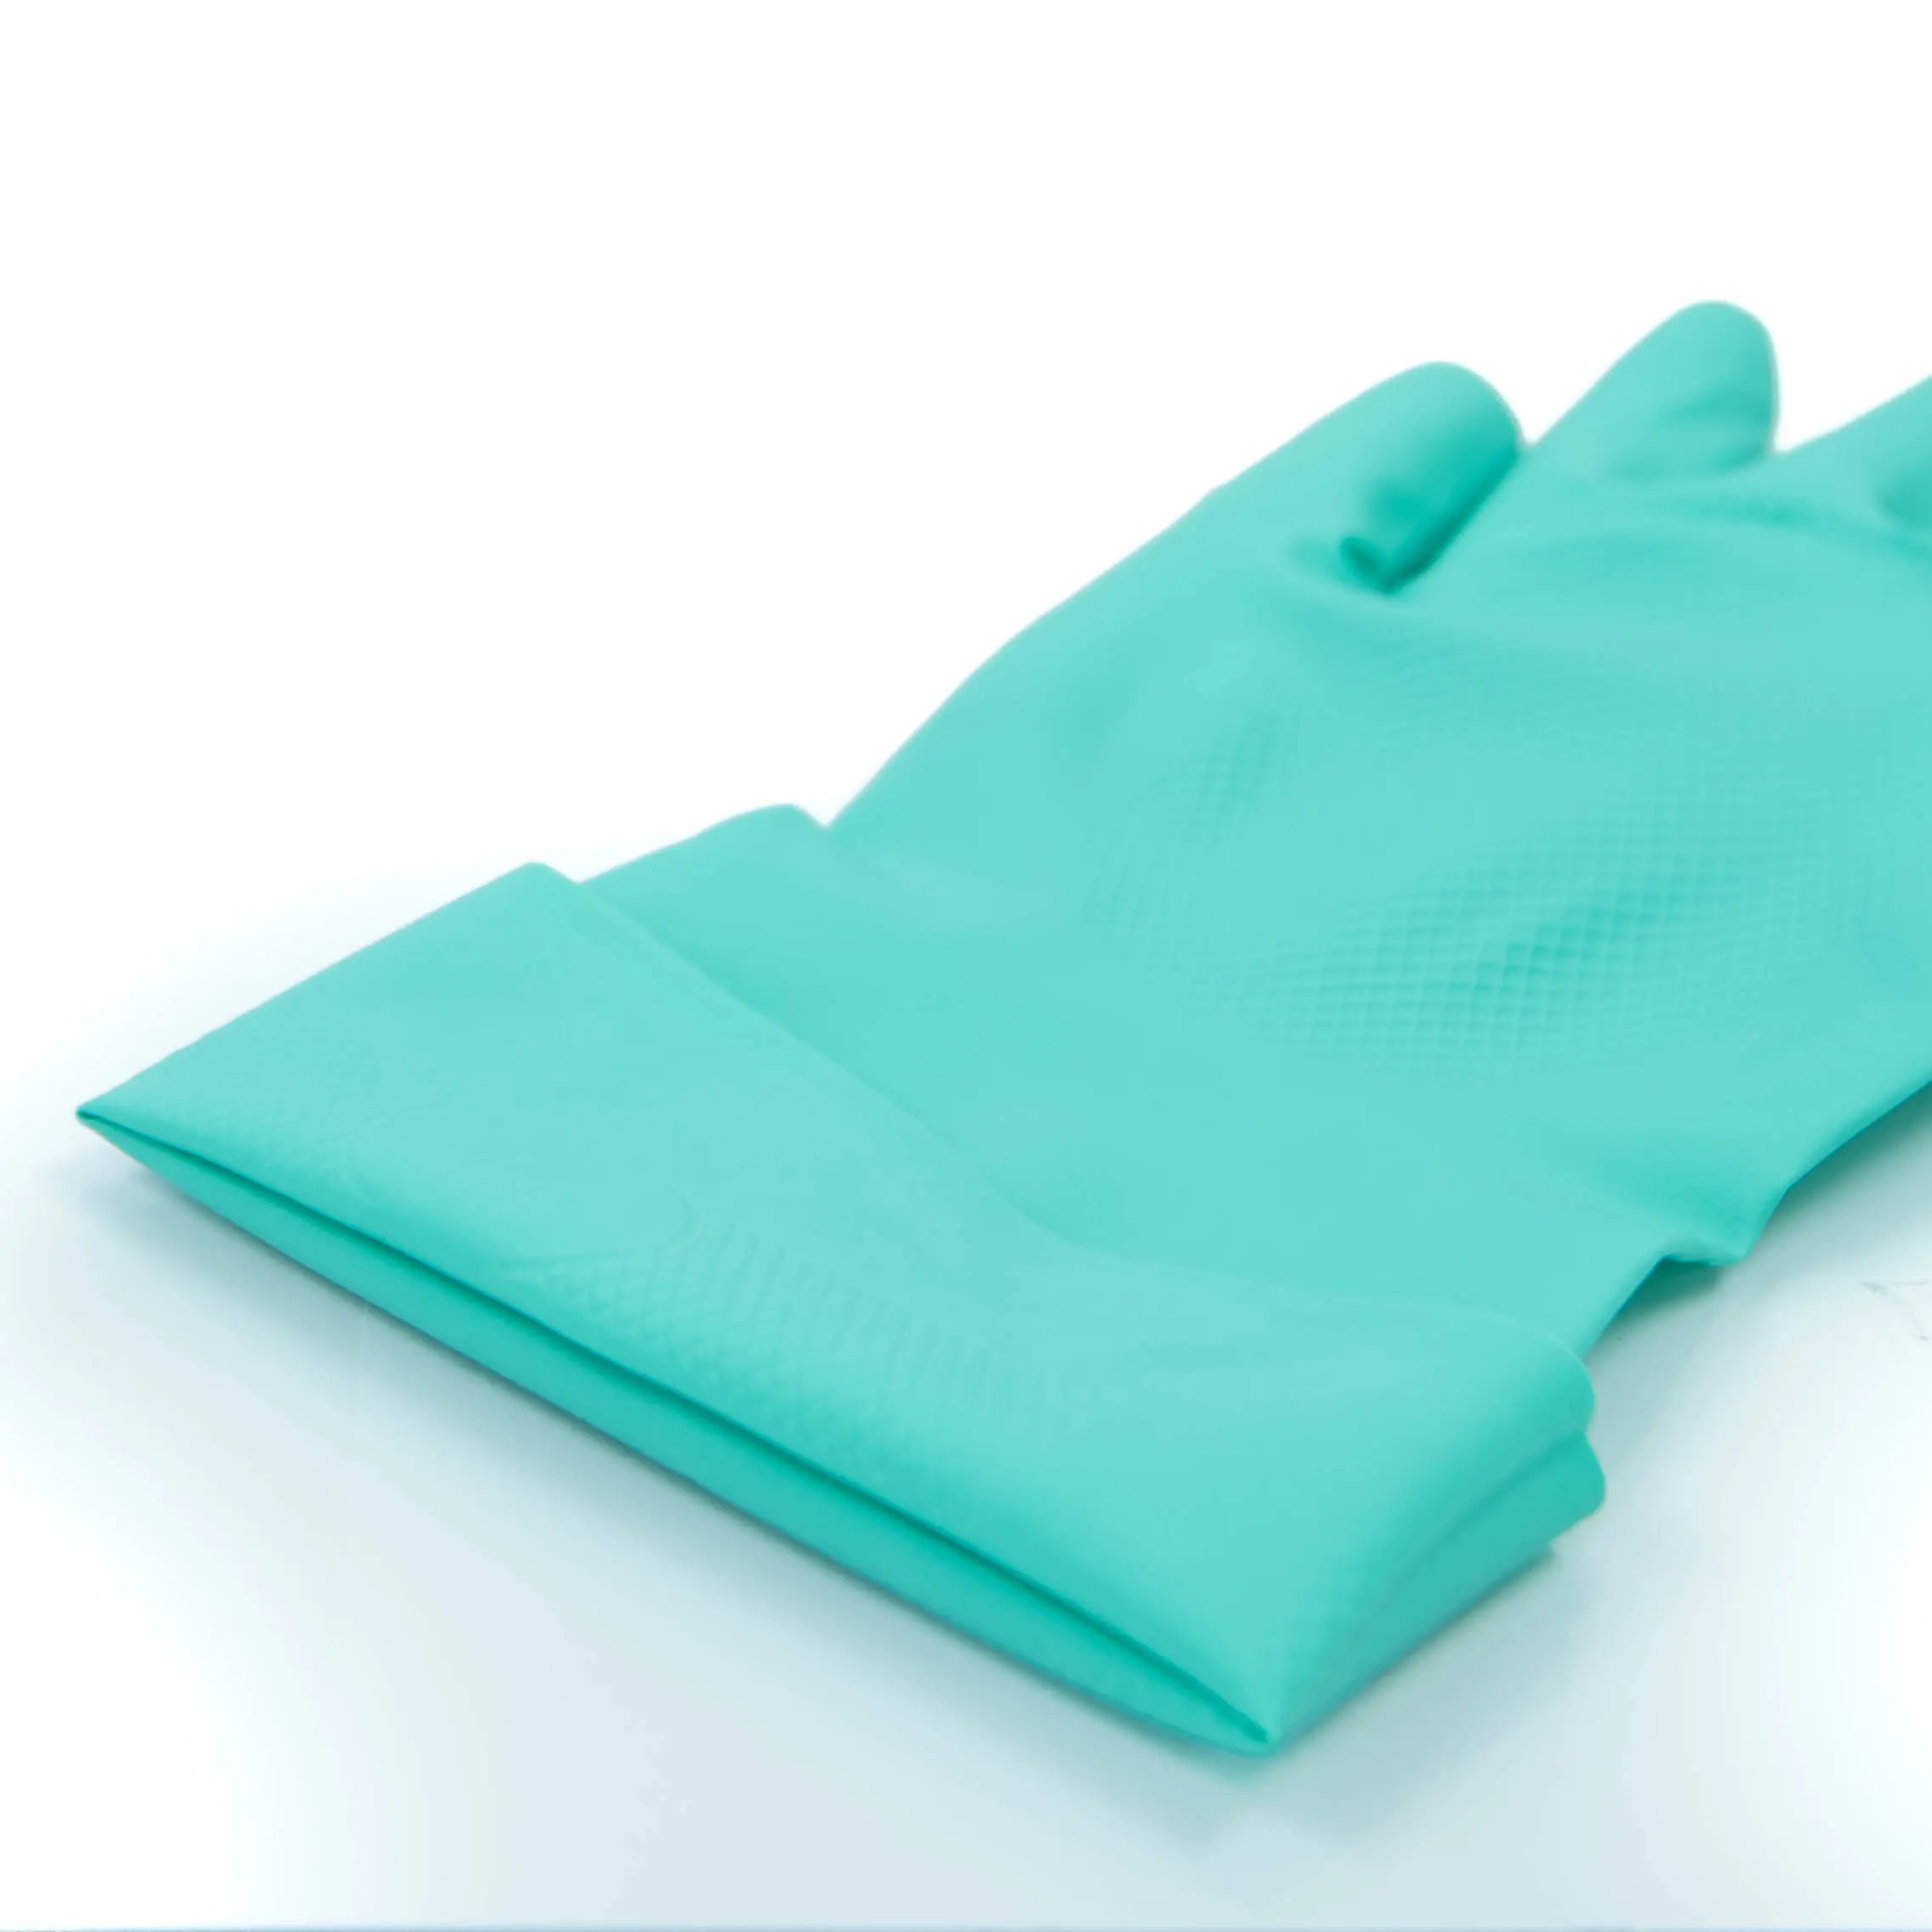 [NU1513] Grüne Nitril handschuhe Industrie arbeit ungefütterte Latex 15 mil Handschuhe für den Umgang mit kritischen Abfällen mit starken Industrie chemikalien